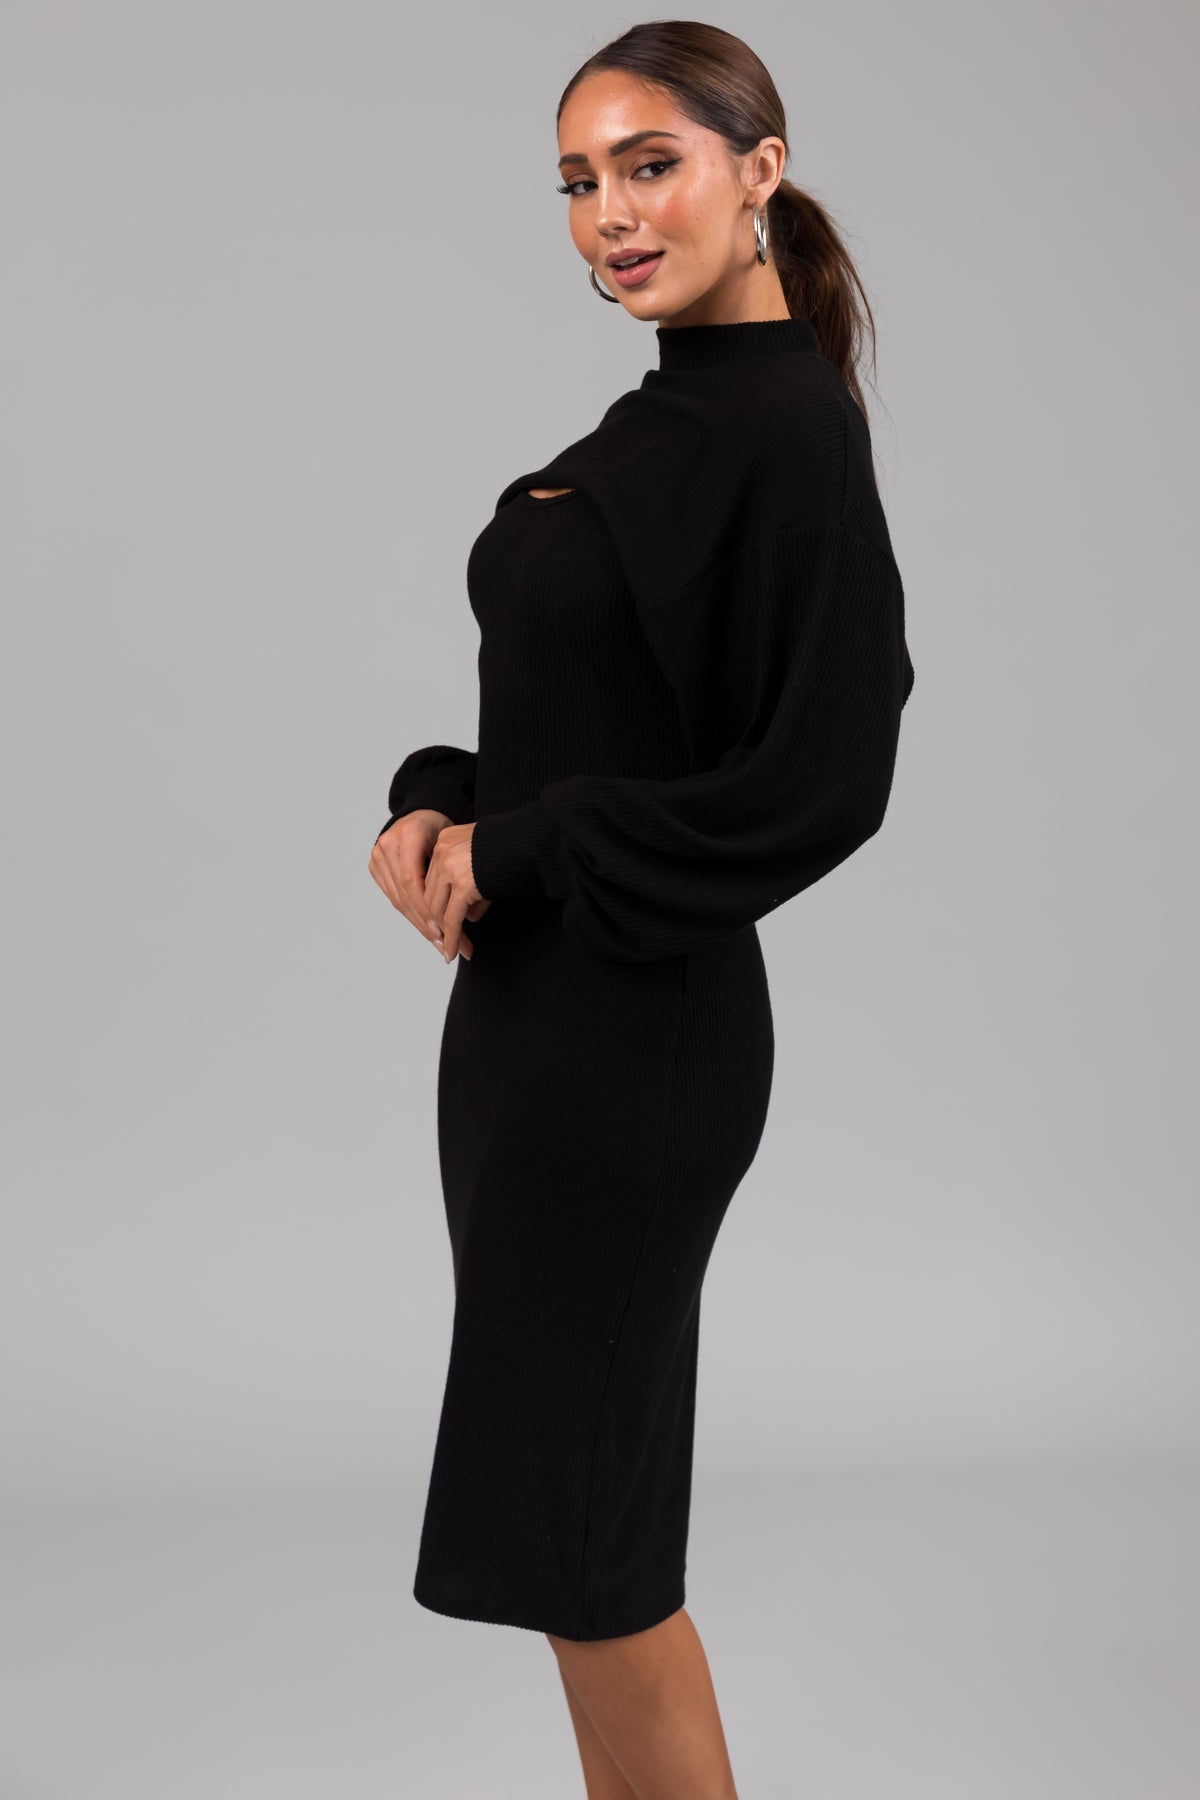 Black Knit Midi Dress with Bolero | Lime Lush